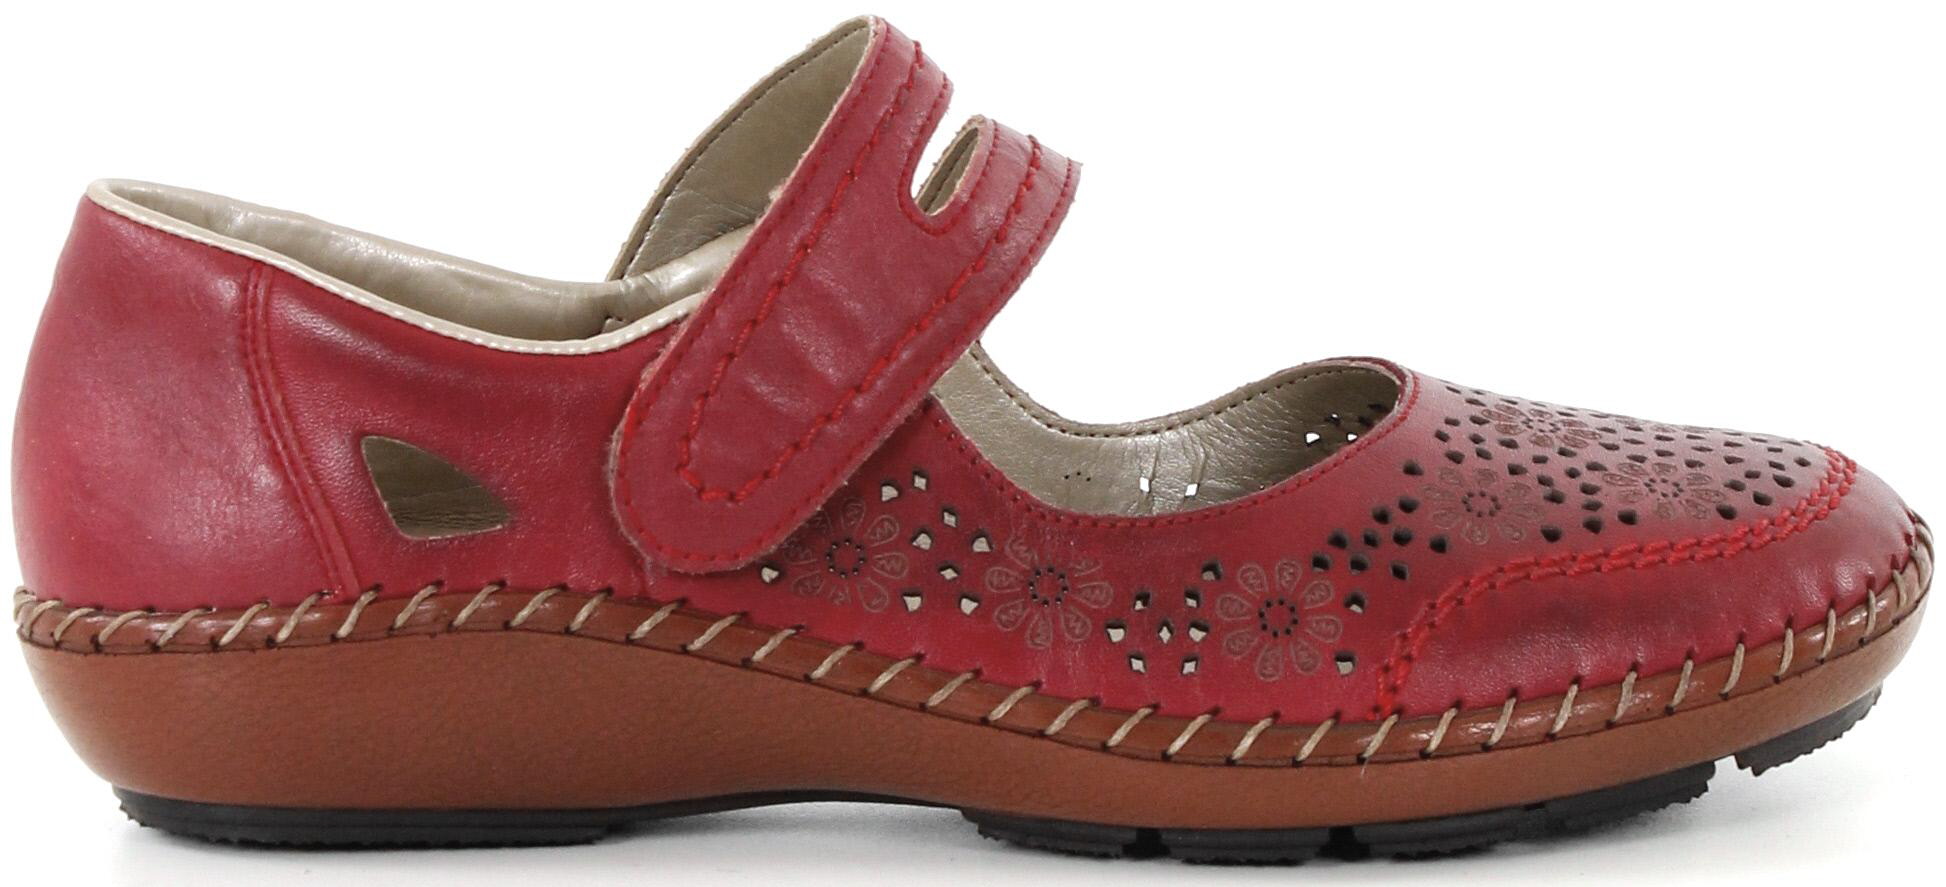 Rieker Walking shoes 44875-33 red - Stilettoshop.eu webstore